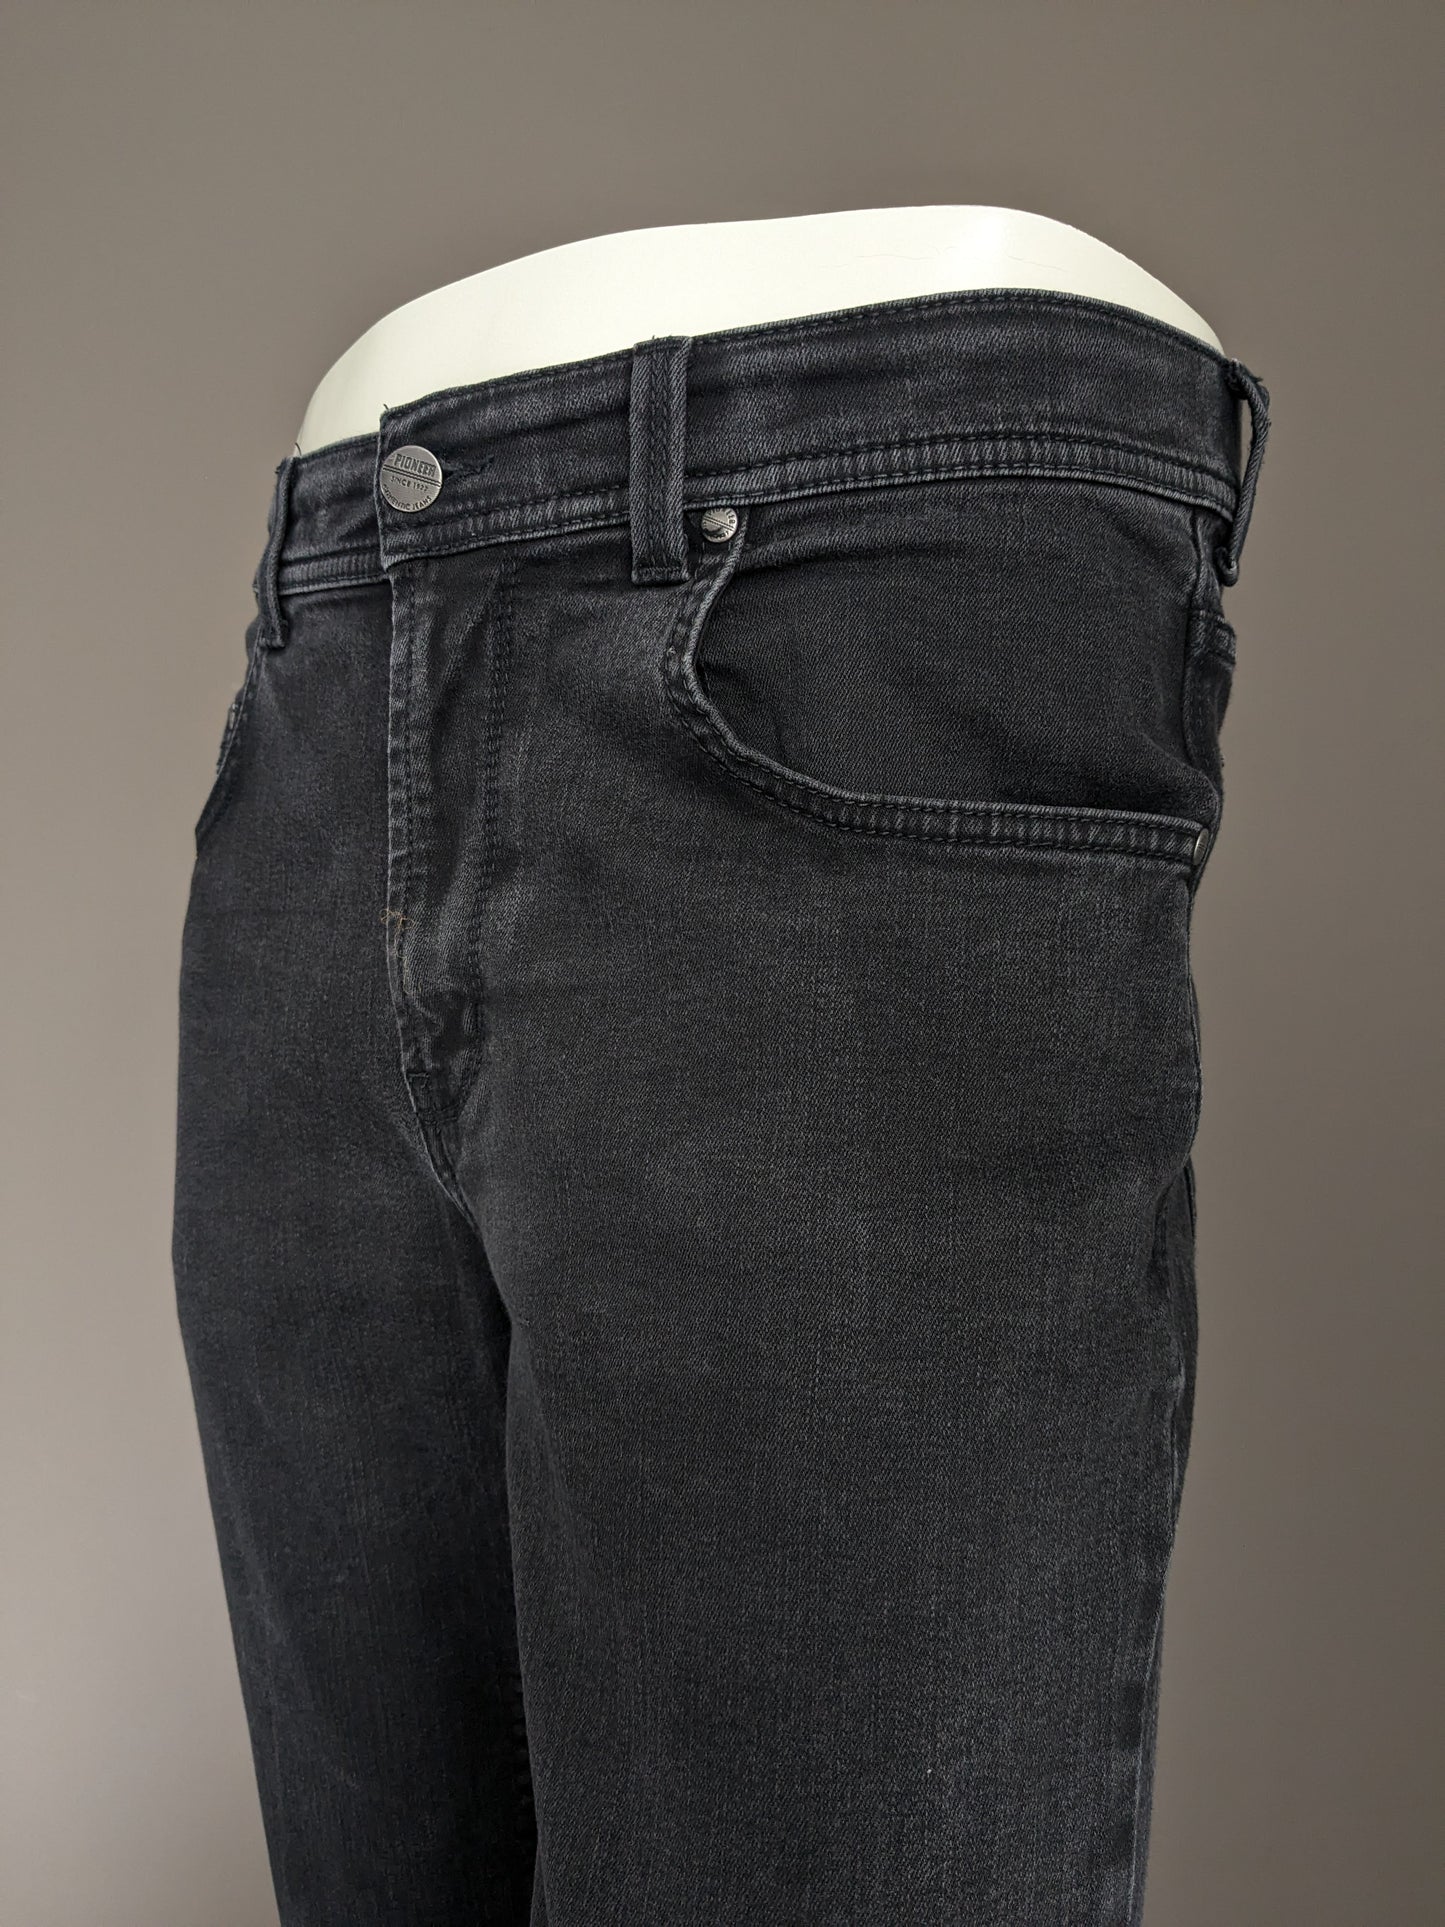 Jeans pionieristici. Colorato nero. Digita Rando. Megaflex. Size W33 - L30. (abbreviato)